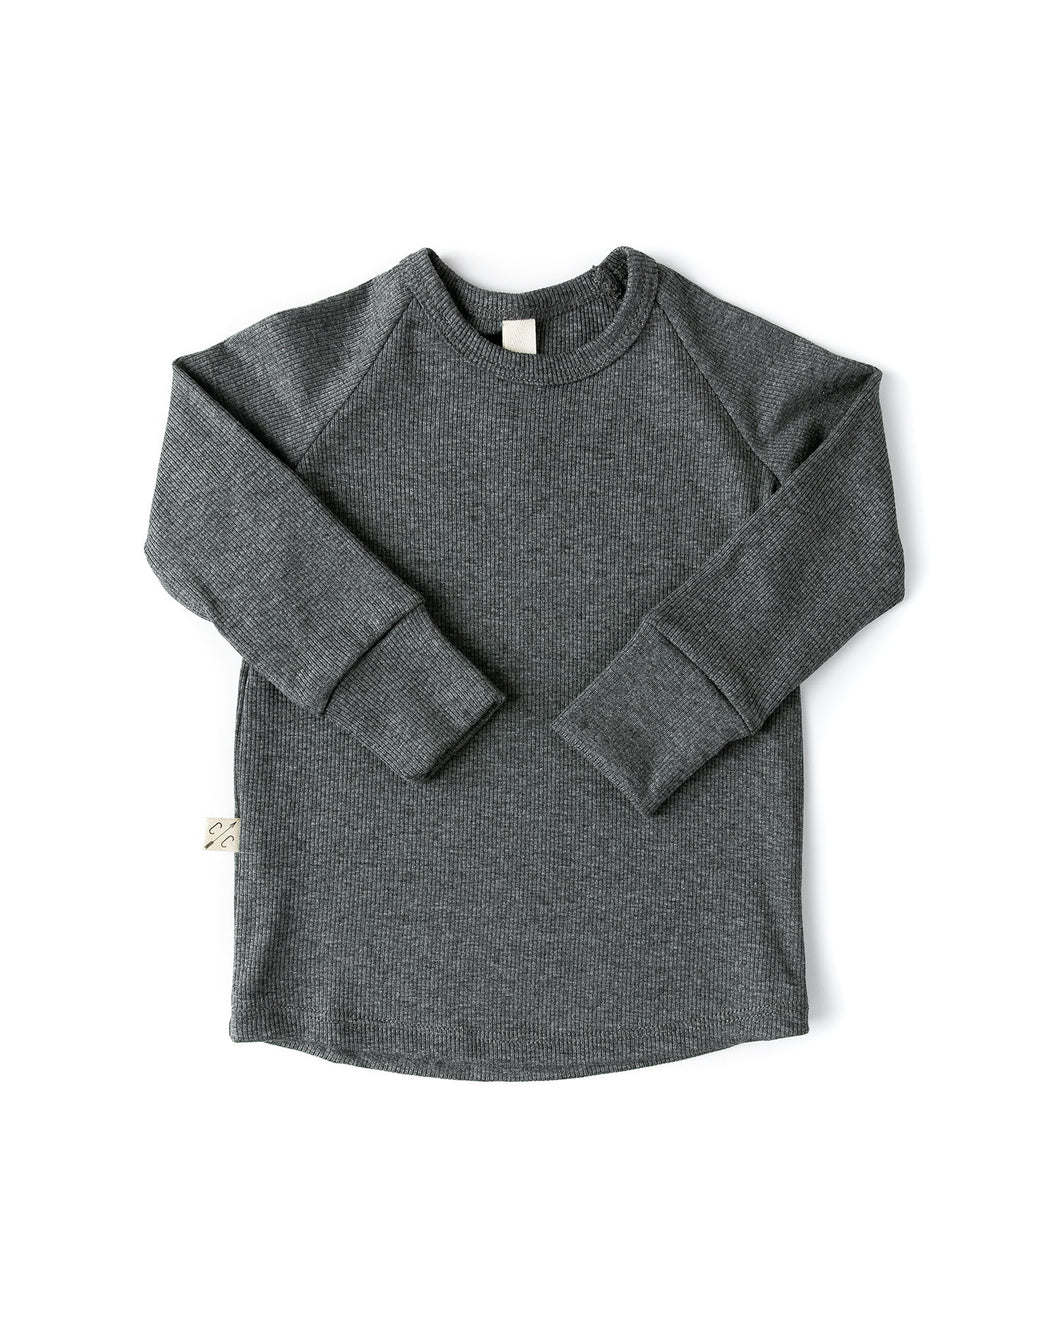 rib knit long sleeve tee - iron gray